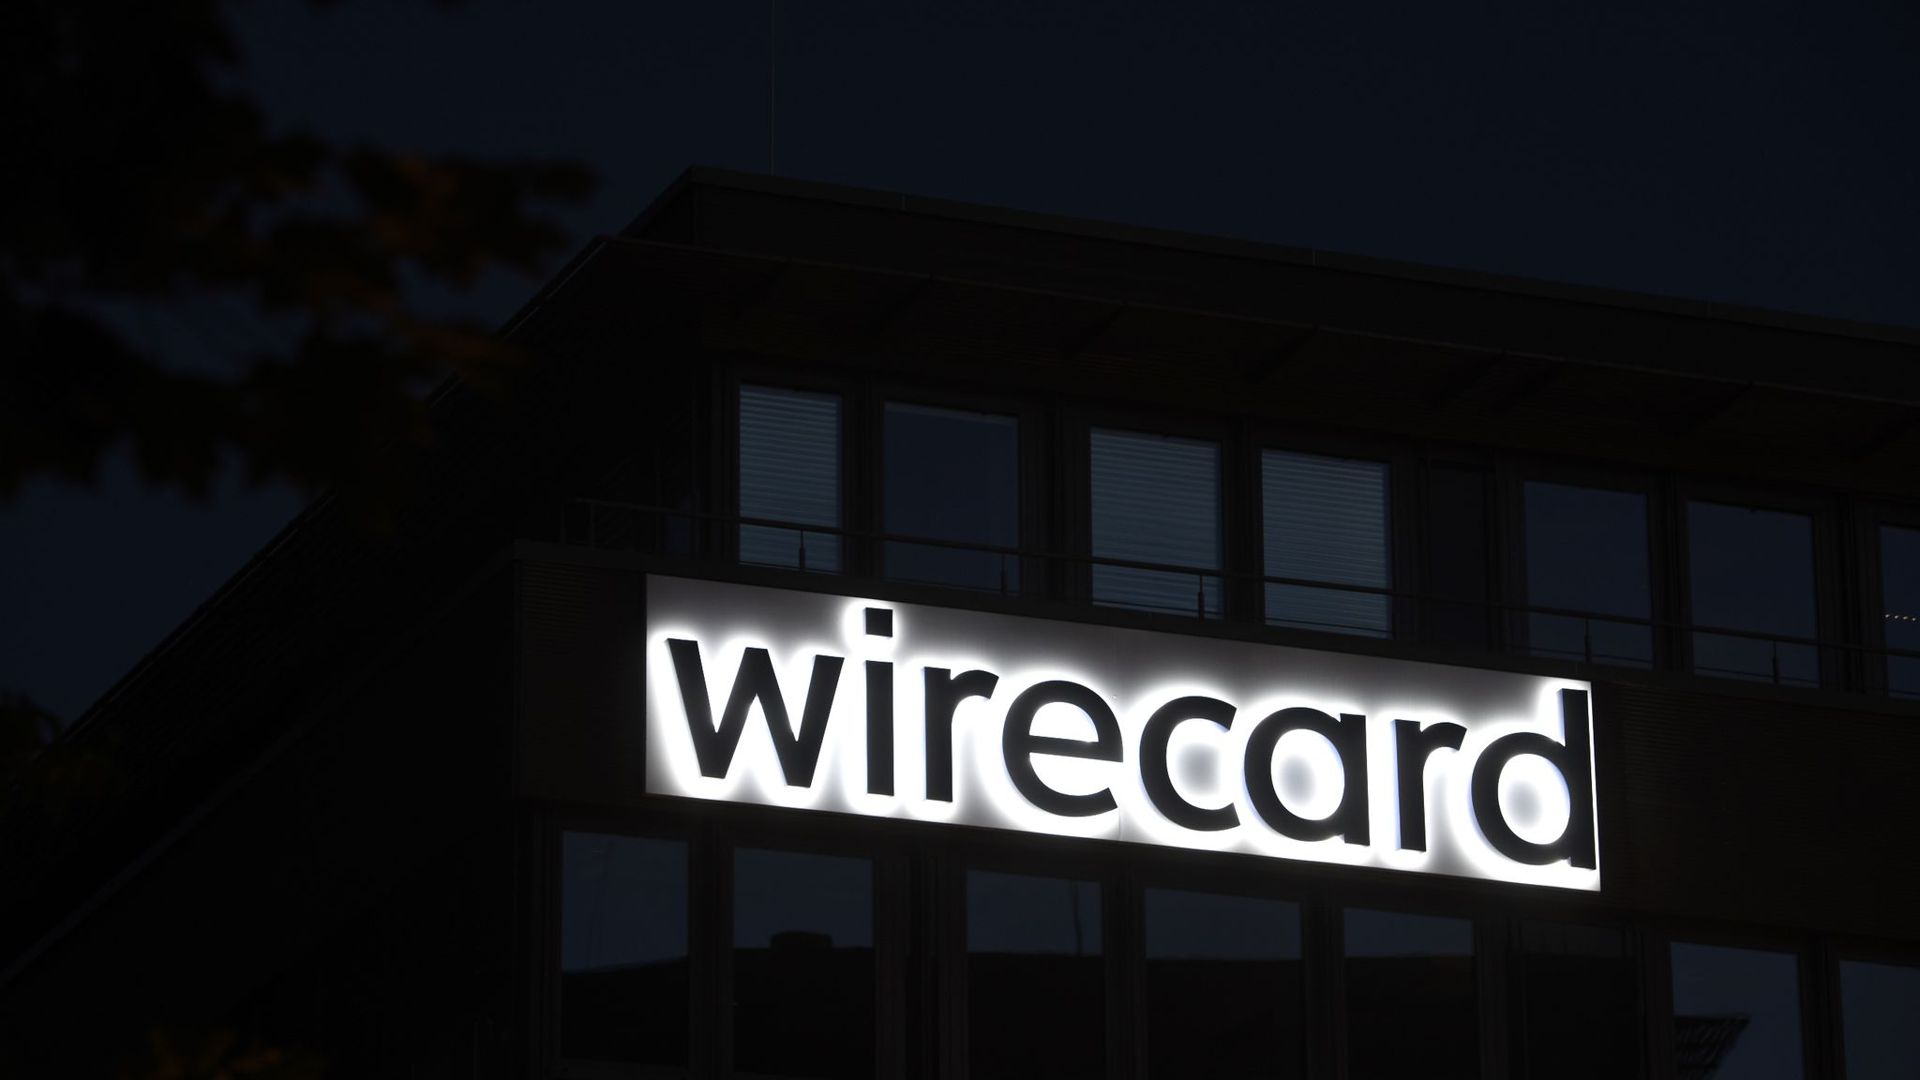 Der japanische Konzern Softbank kündigt seine Partnerschaft mit Wirecard auf.